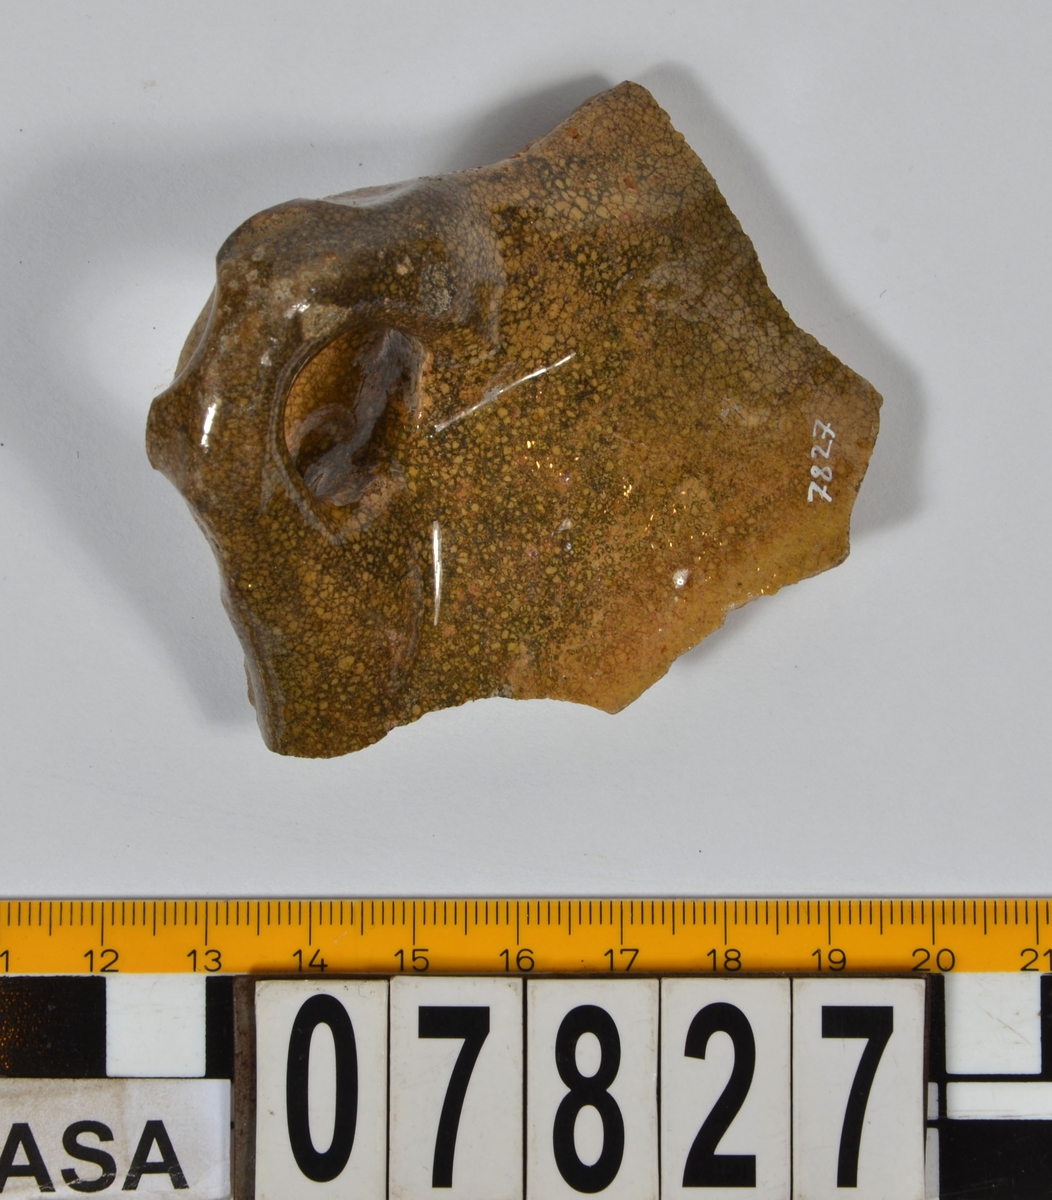 Del av skål.
1 st vertikal bandhänkel, tummad, 70 x 60 mm. Fragment av mynningsrand och buk. In- och utsida blyglaserad gulgrön.